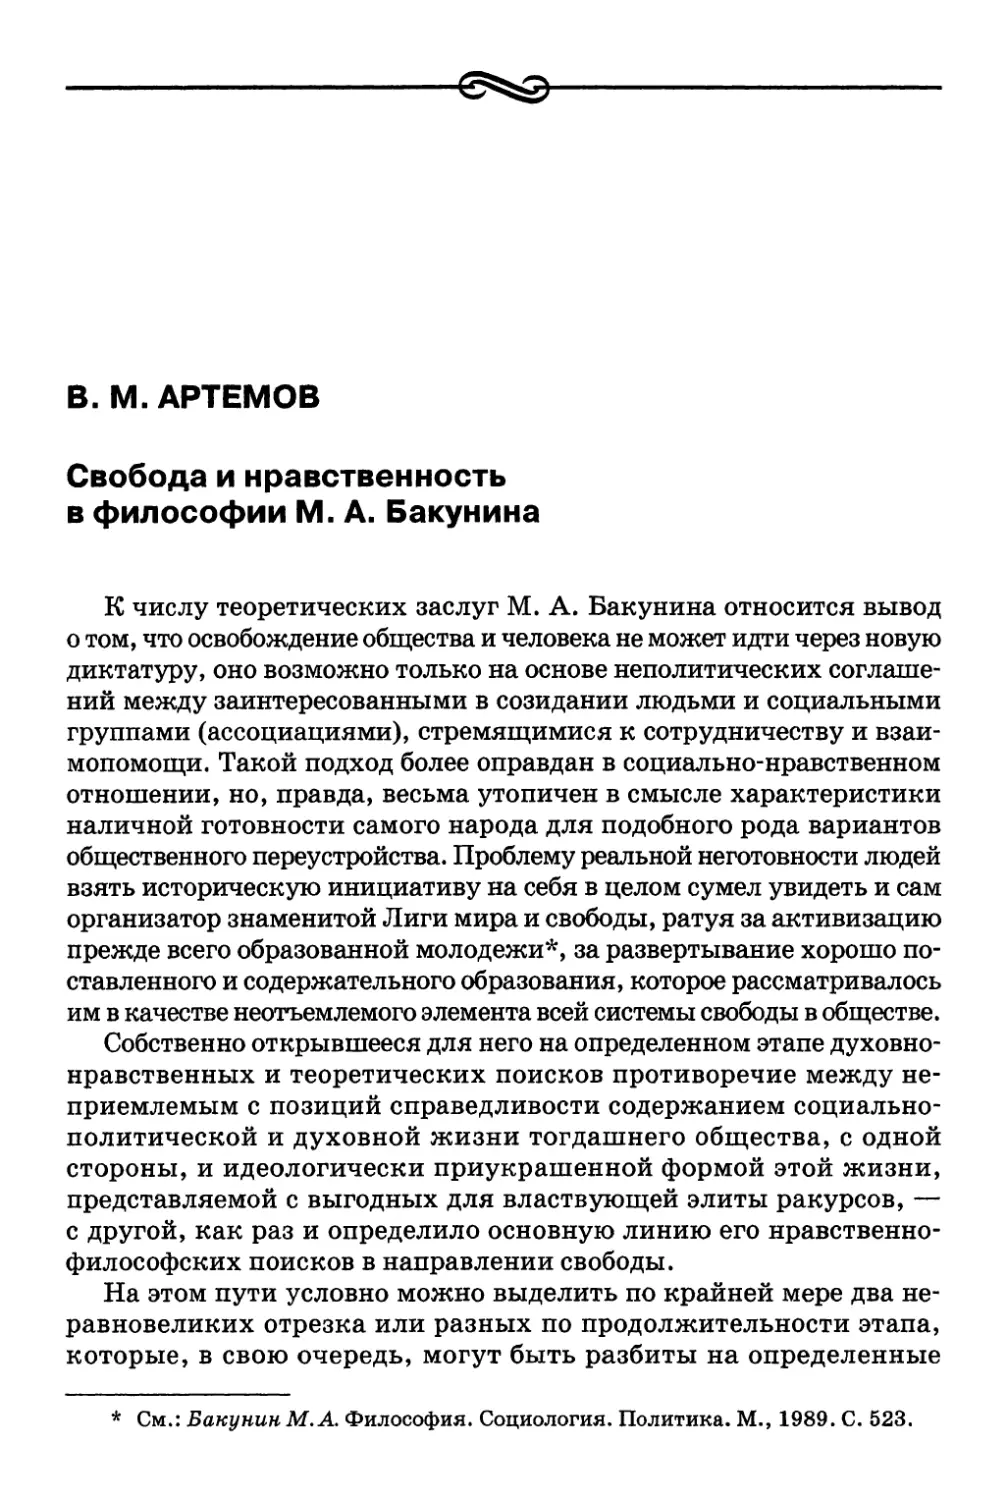 В. М. Артемов. Свобода и нравственность в философии М. А. Бакунина